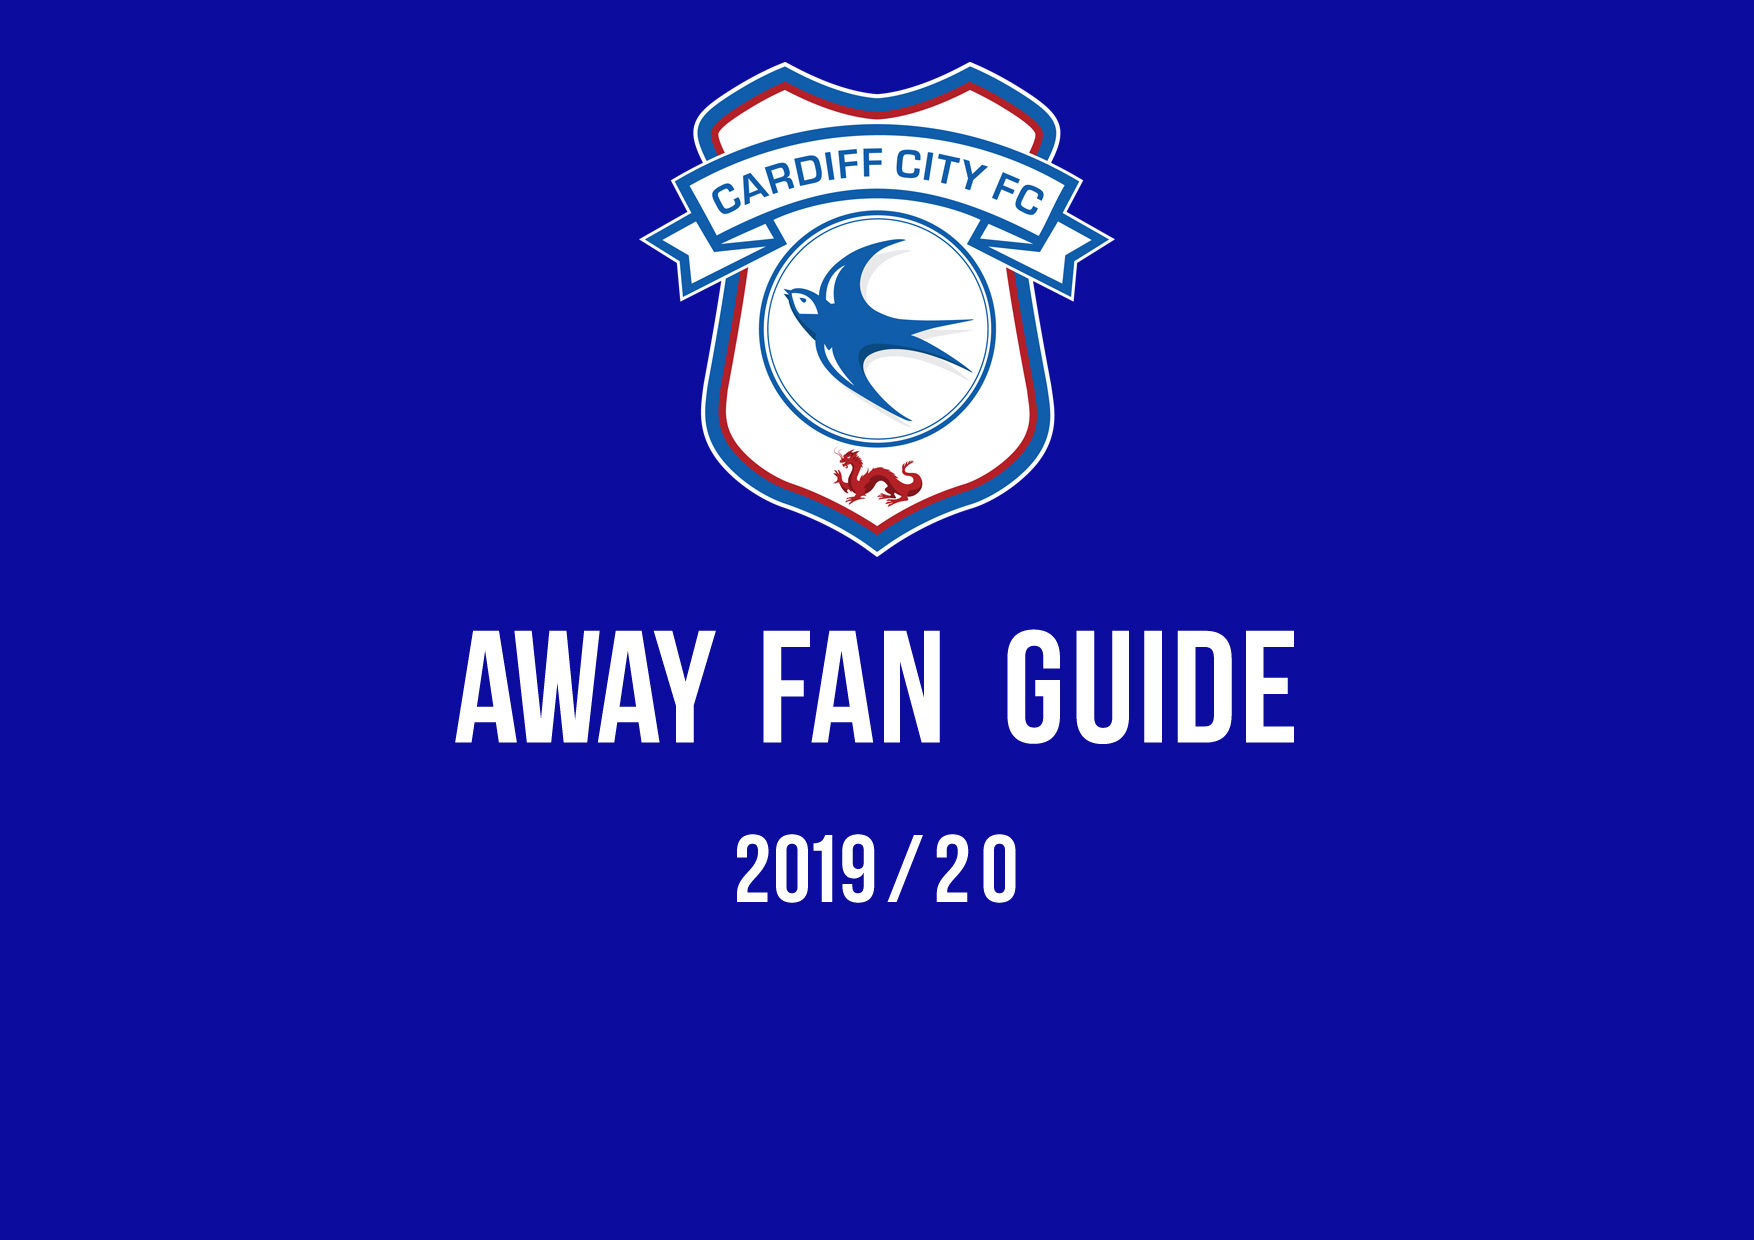 Away fan guide